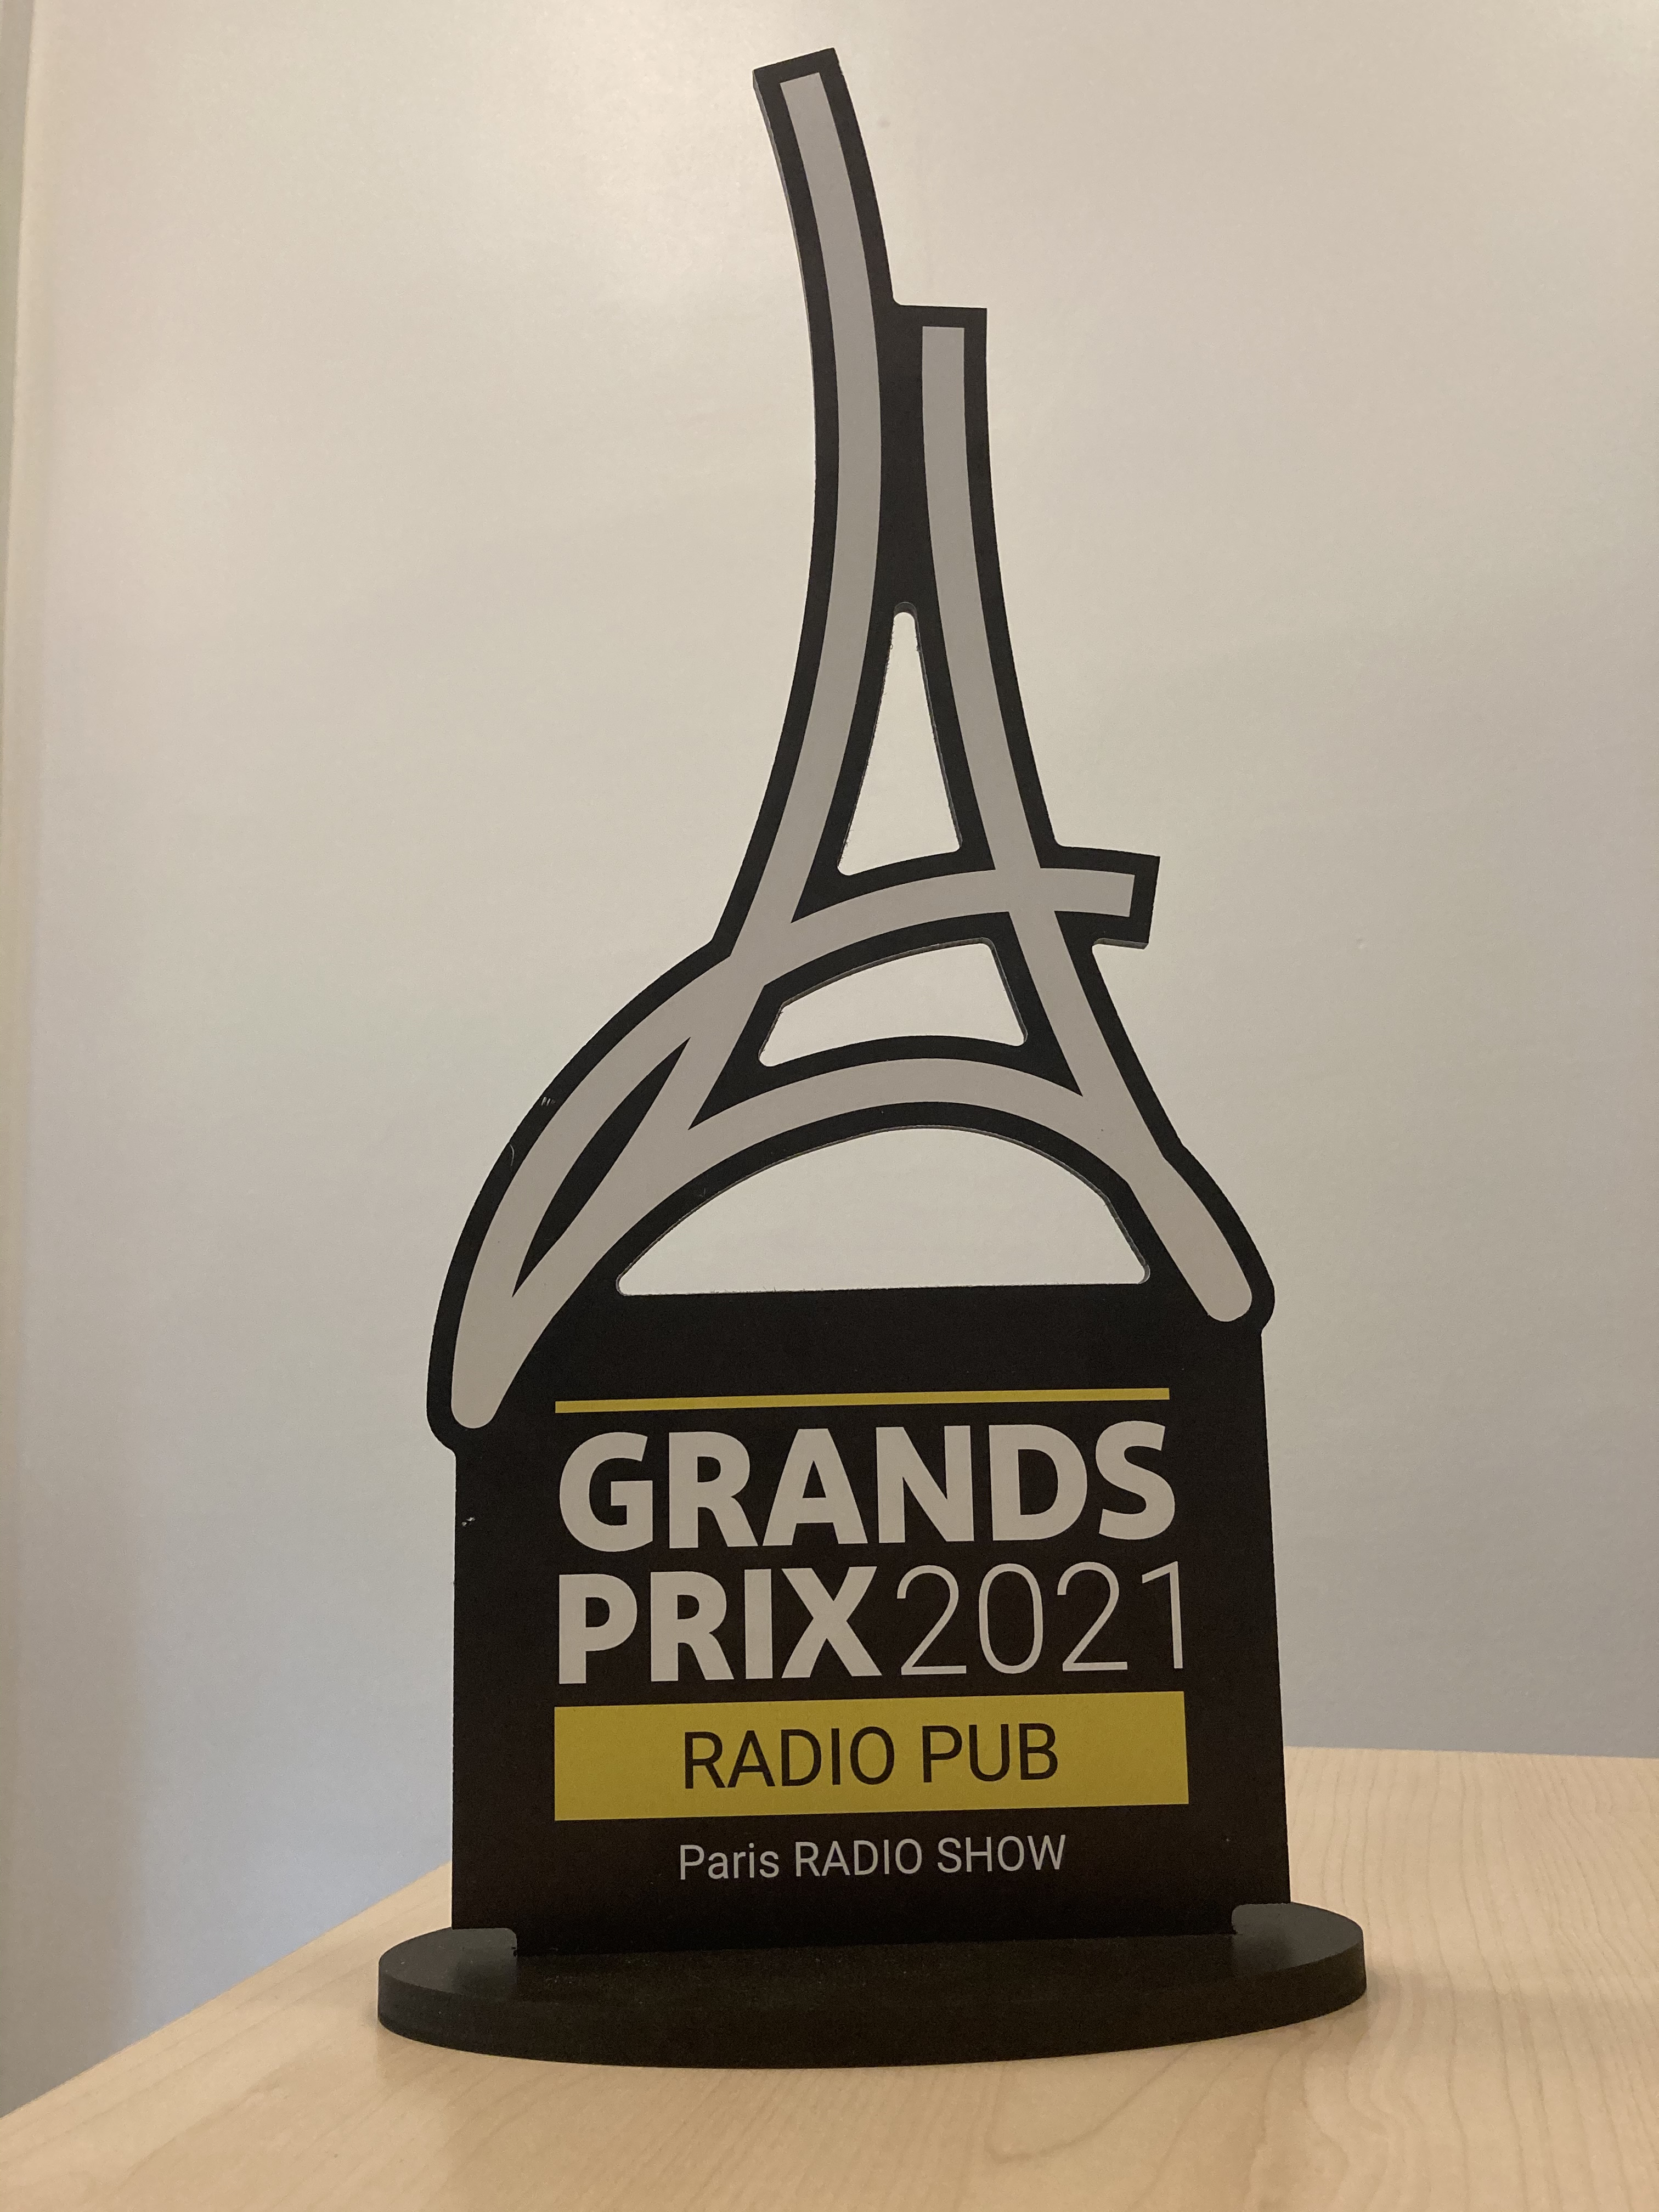 Le nouveau trophée des Grands Prix Radio, des prix bien évidemment reconduits en 2021 pour le prochain Paris Radio Show.